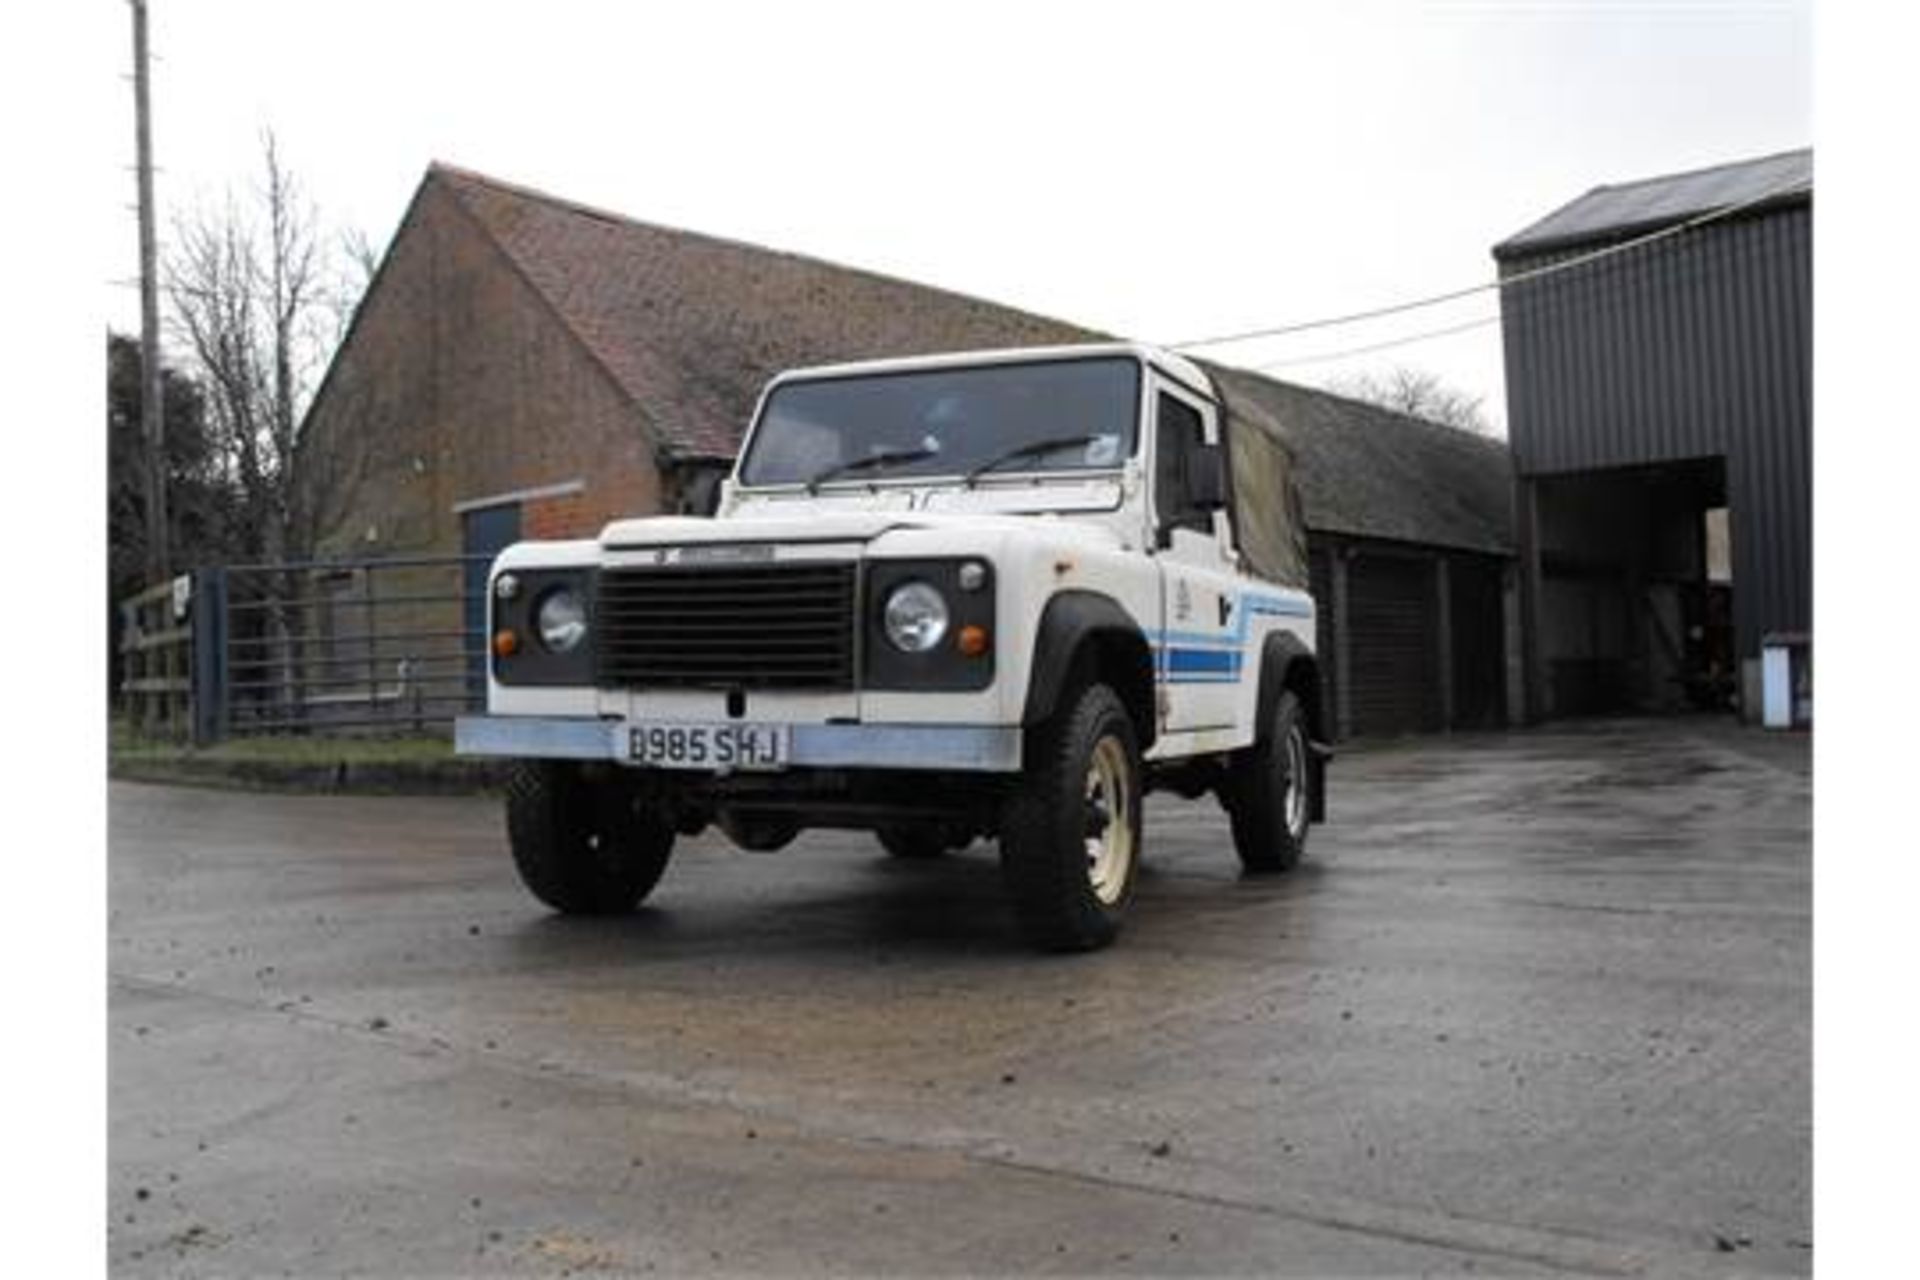 1985 Land Rover 90 - 2.5 Diesel (No VAT on Hammer) - Image 2 of 13